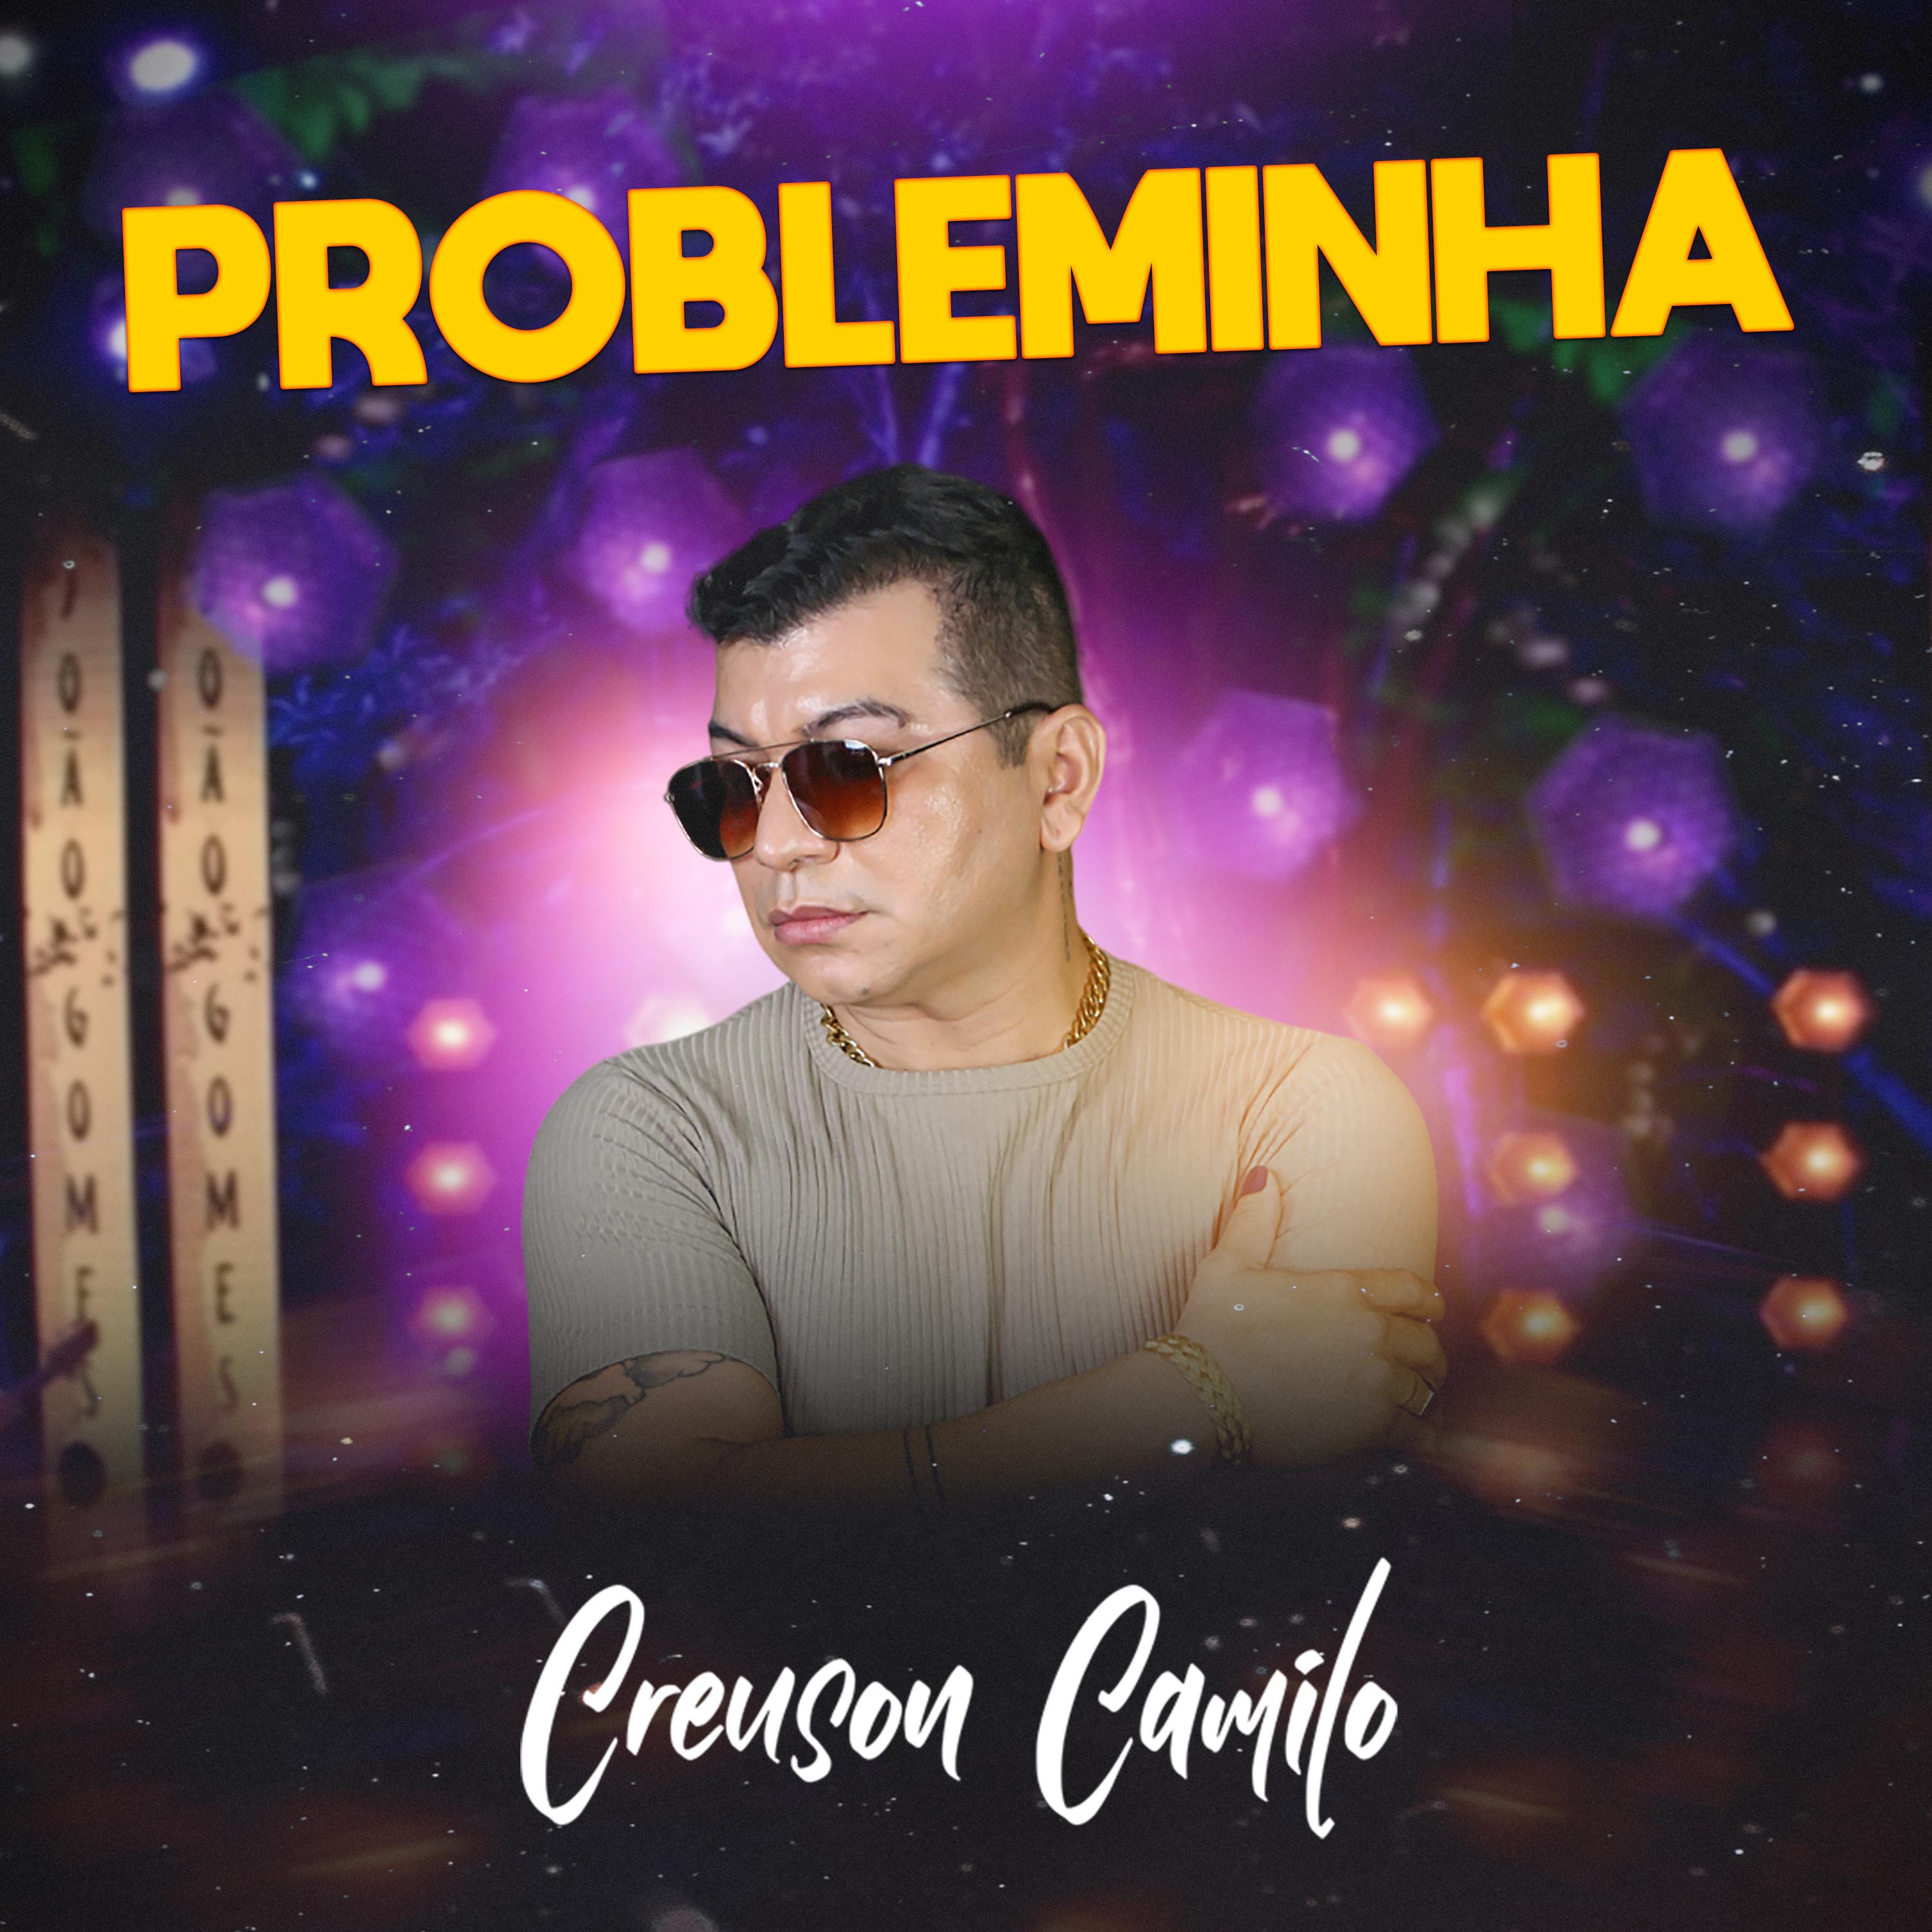 Creuson Camilo - Probleminha